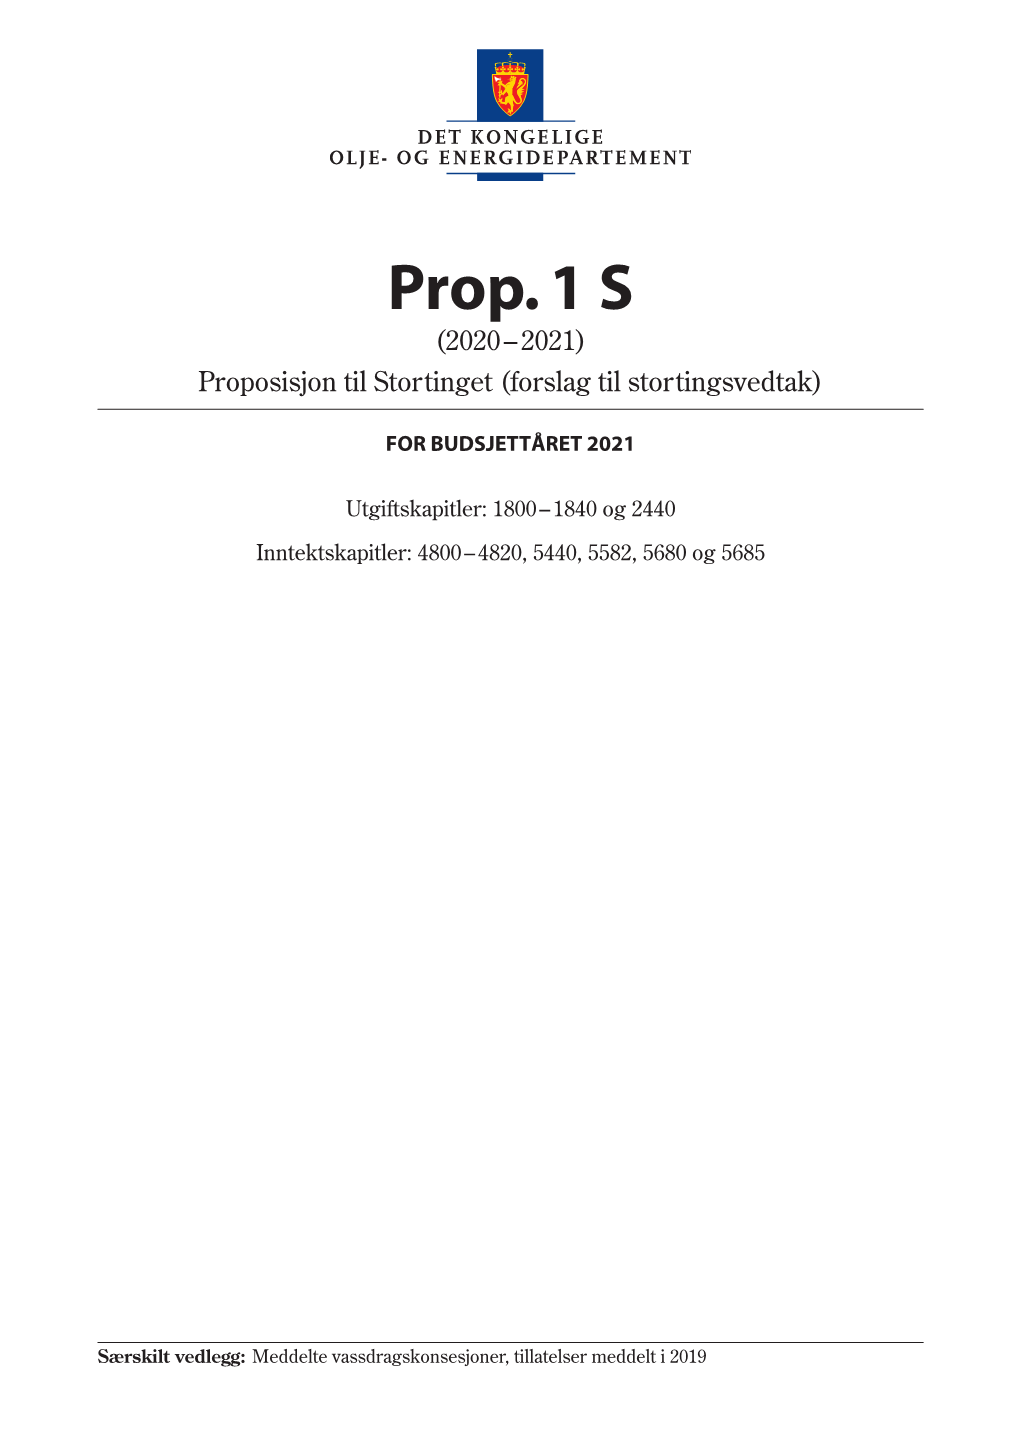 Prop. 1 S (2020-2021)